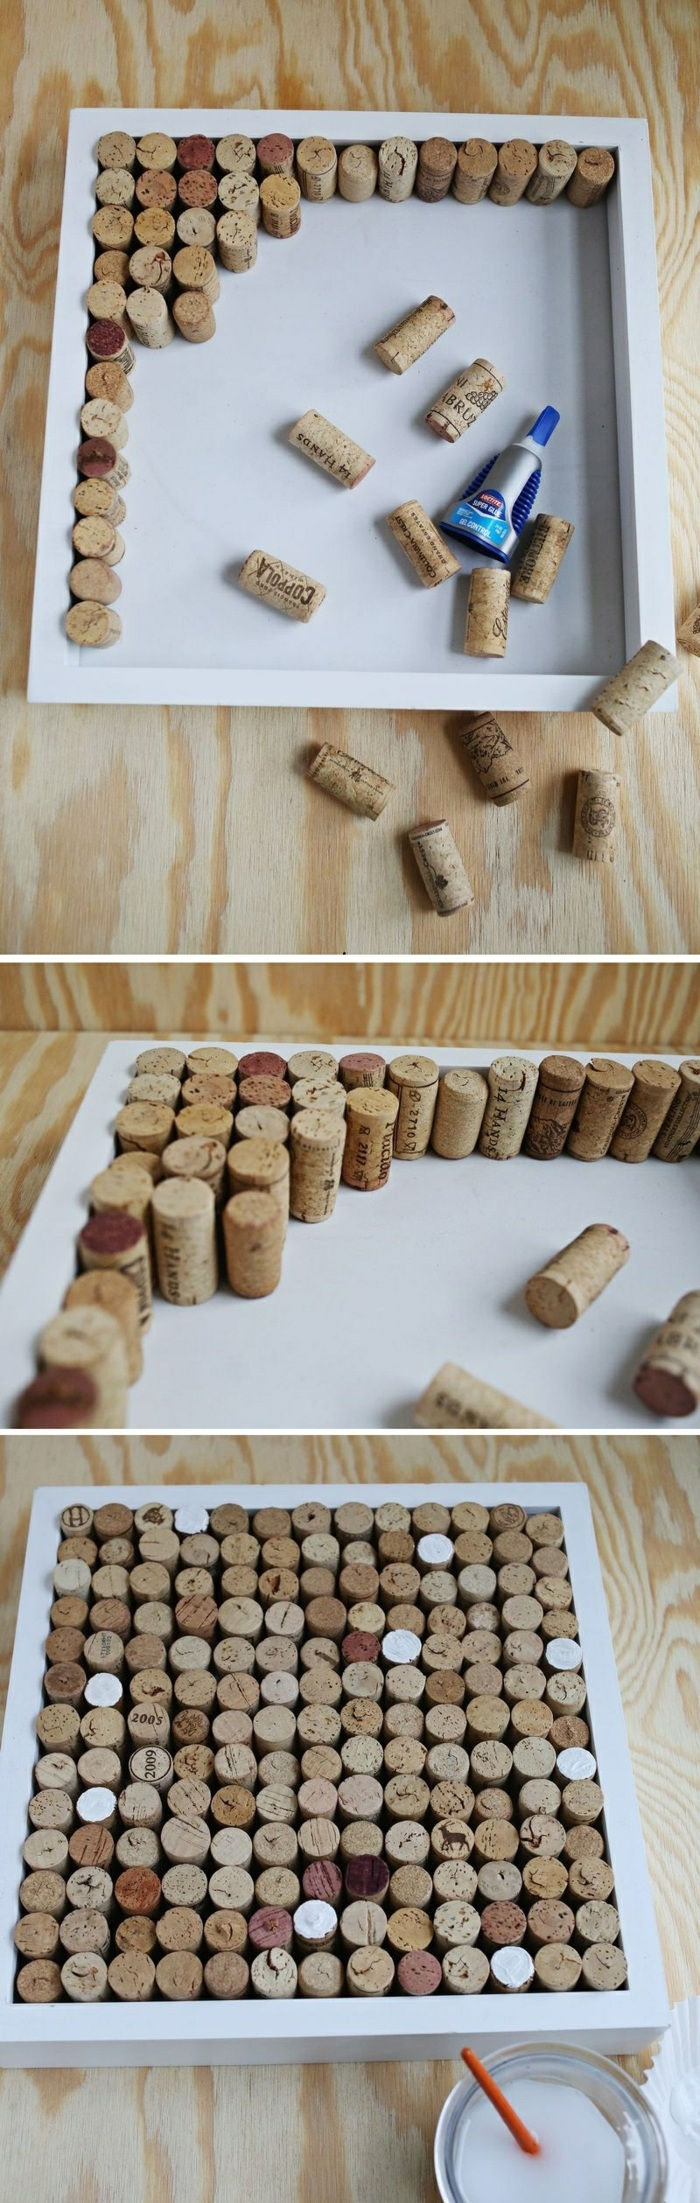 placa de pinos feita de rolhas de vinho, embalagem de lona, ​​adesivo, cor branca